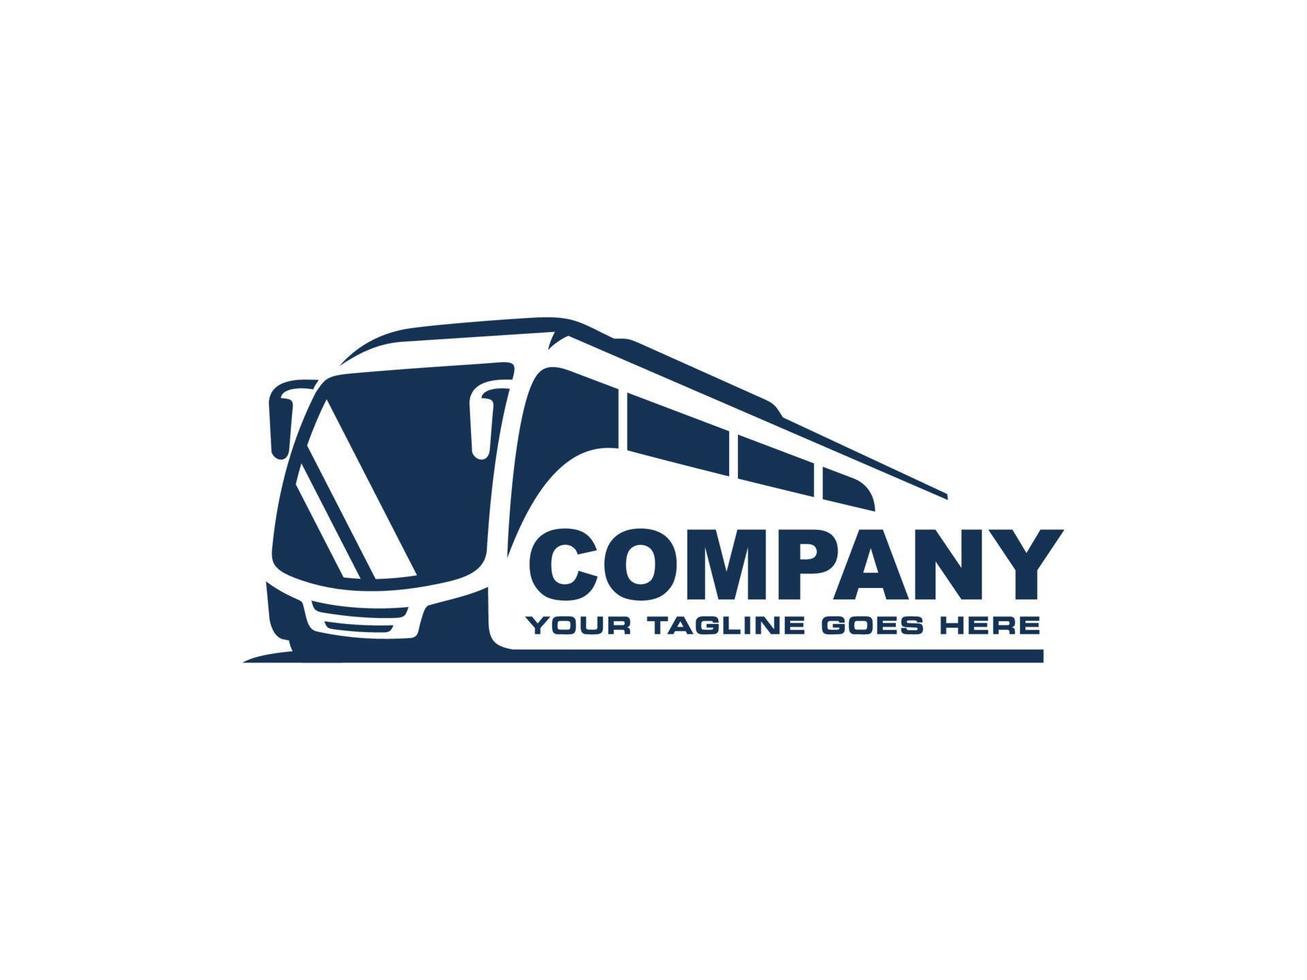 Bus logo vector. Travel bus logo vector